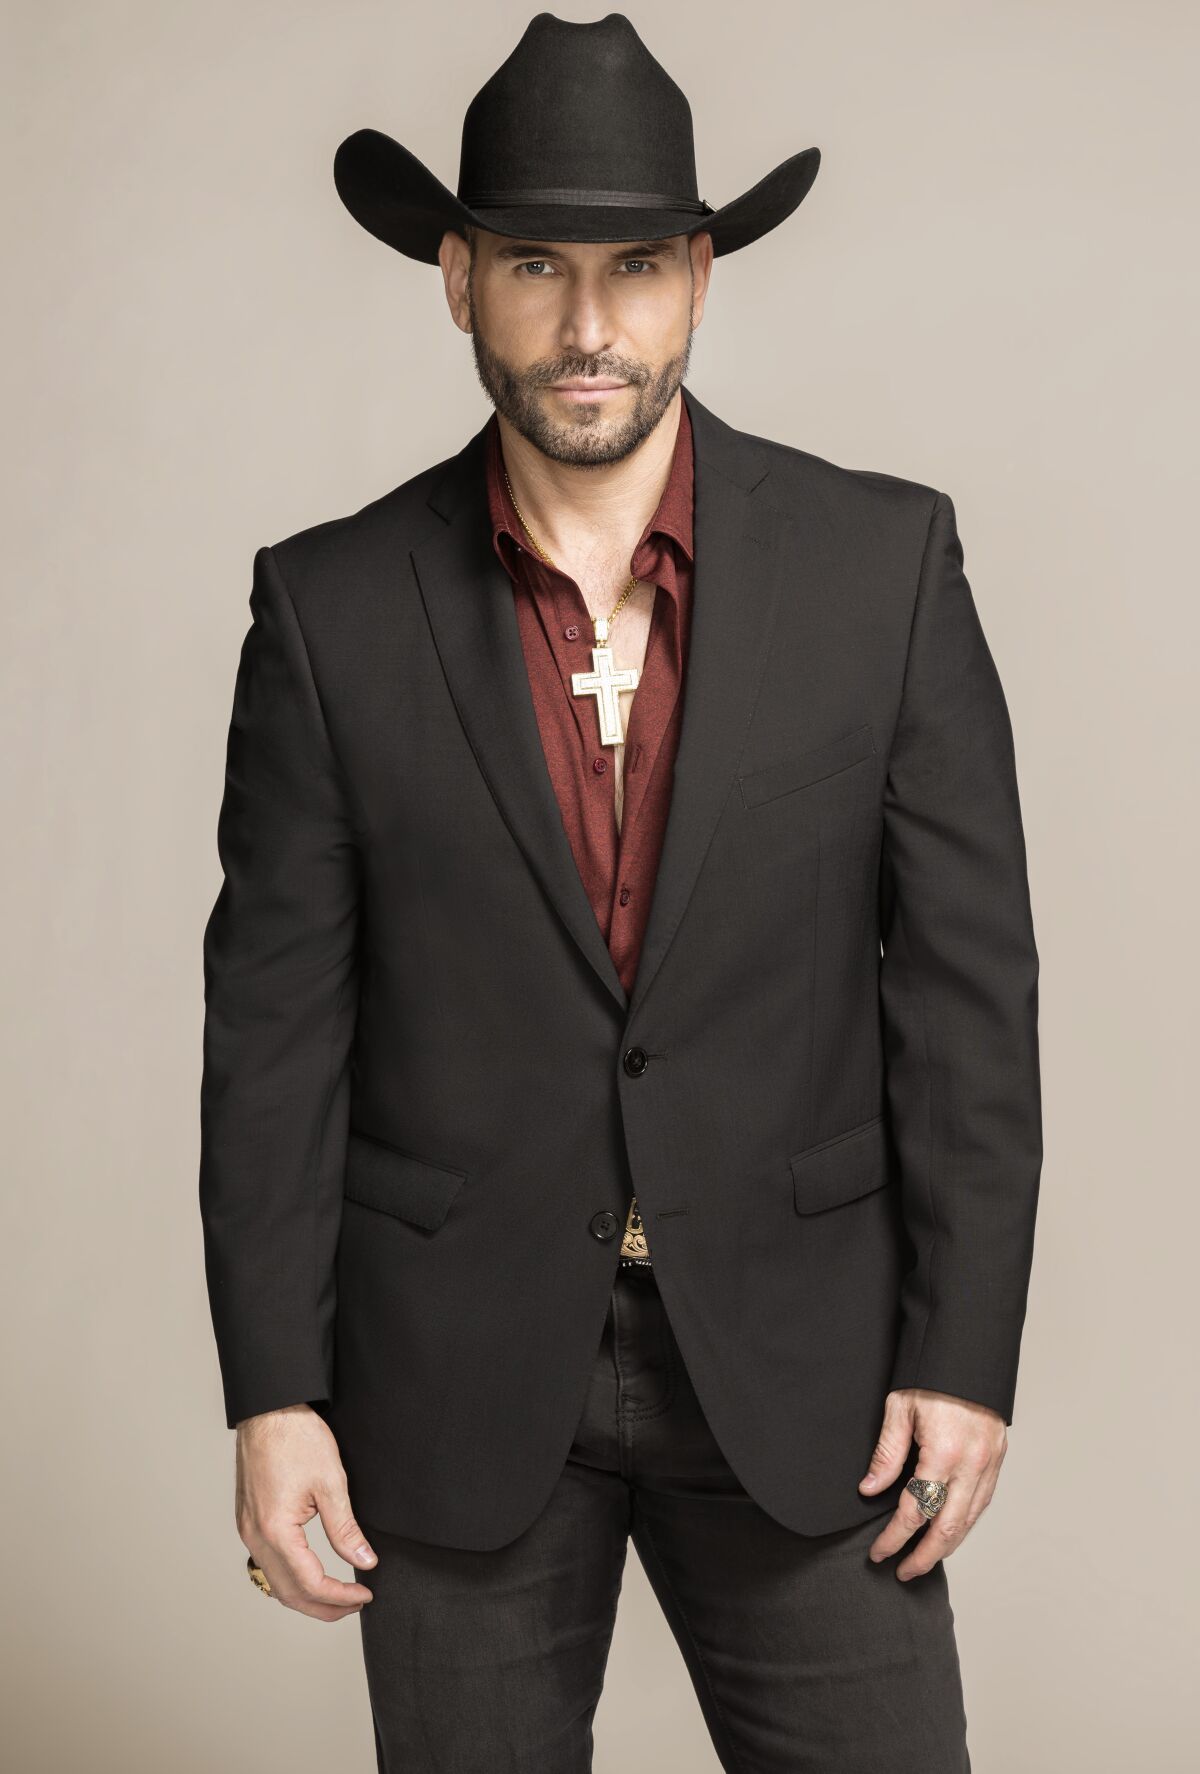 Rafael Amaya en su personificación de Aurelio Casillas.